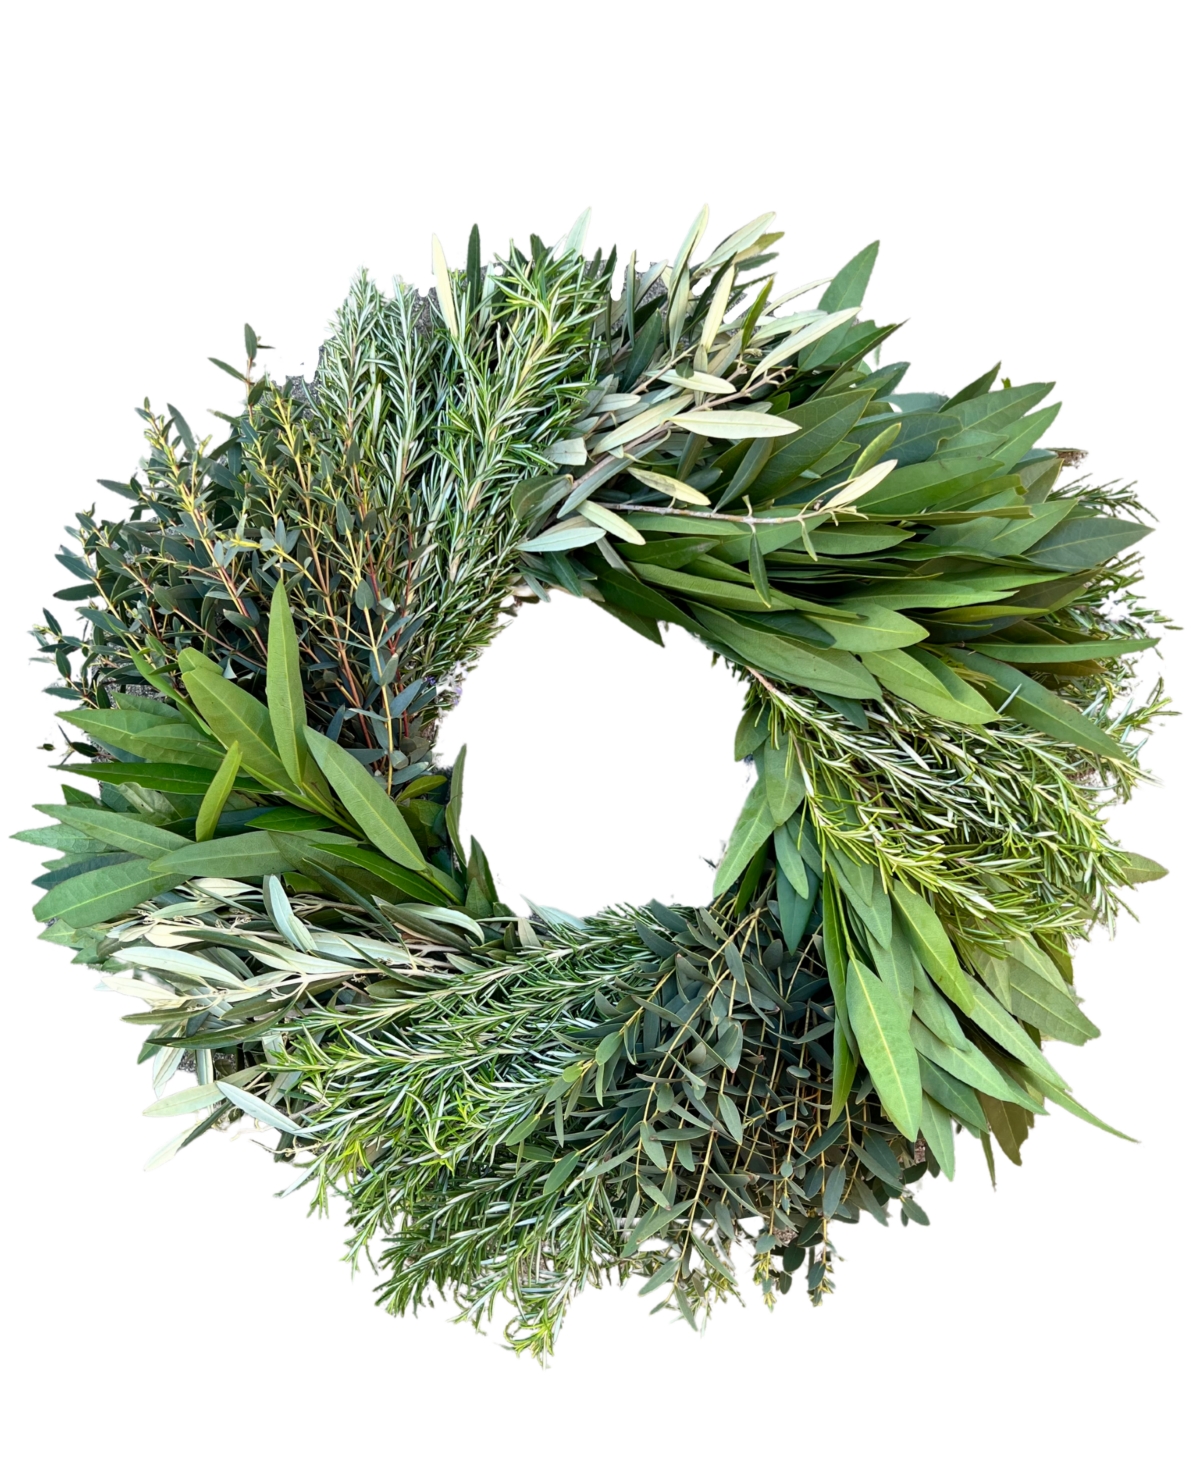 Eucalyptus, Rosemary, Bayleaf and Olive Fresh Spring Wreath, 20"